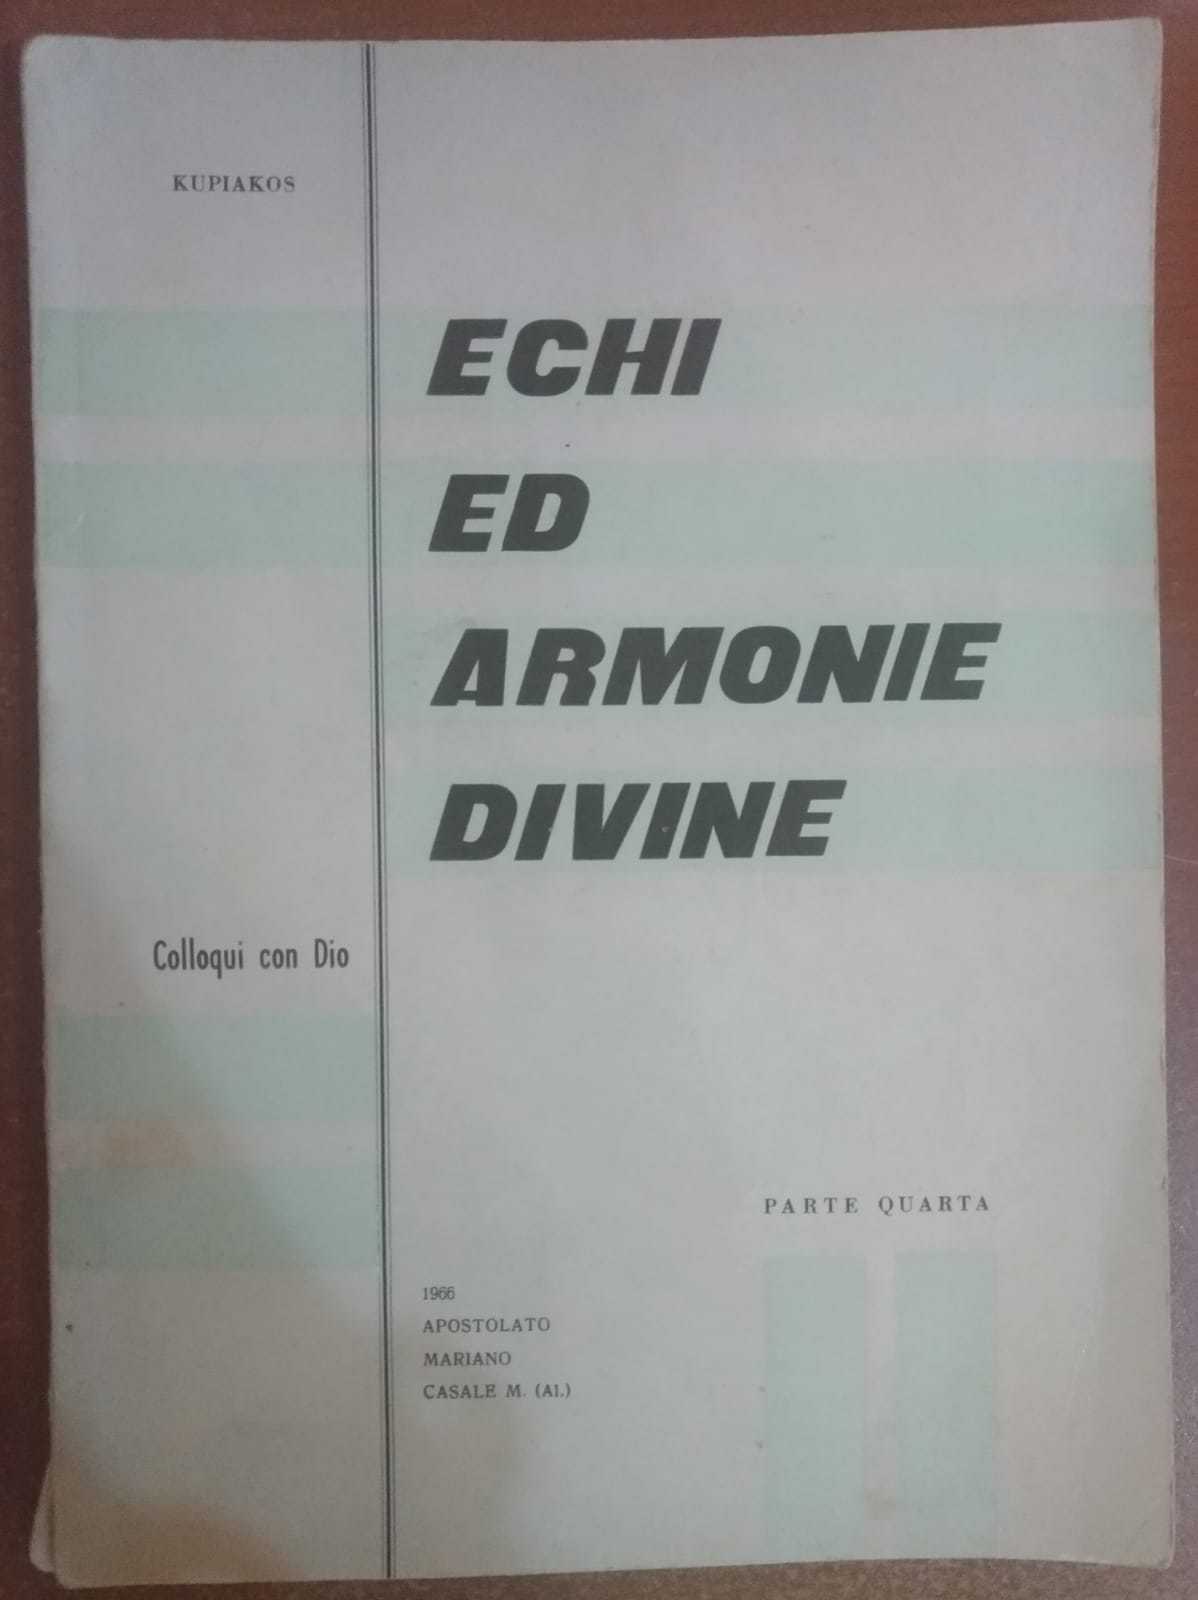 Echi ed armonie divine,colloqui con Dio,parte quarta-Kupiakos,1966 - S